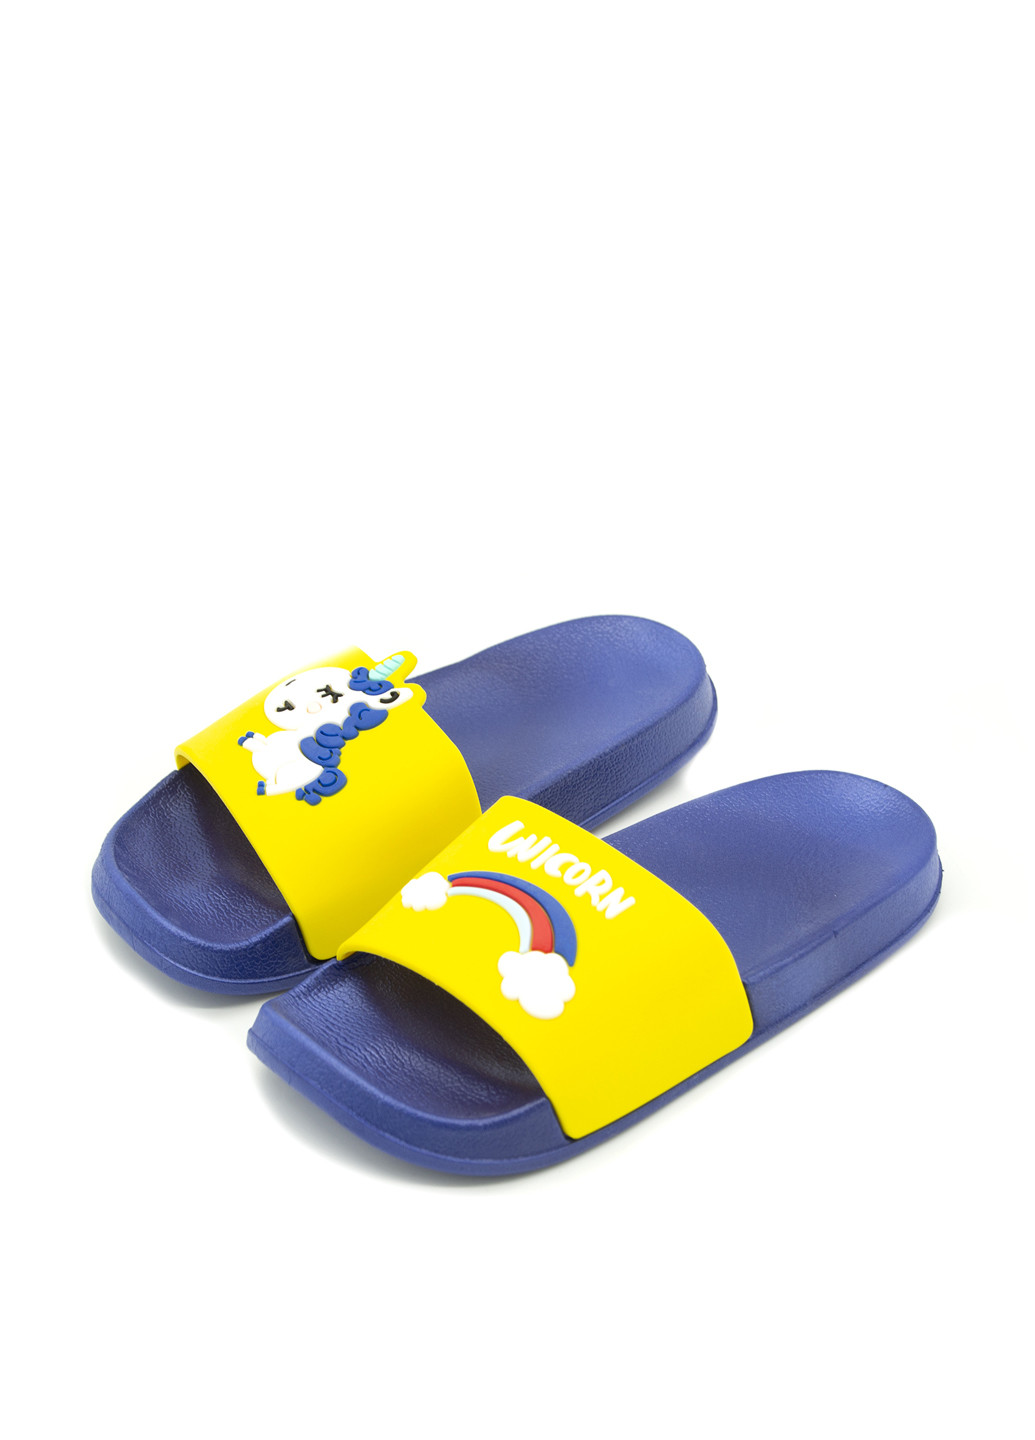 Сине-желтые пляжные шлепанцы Plaazzo